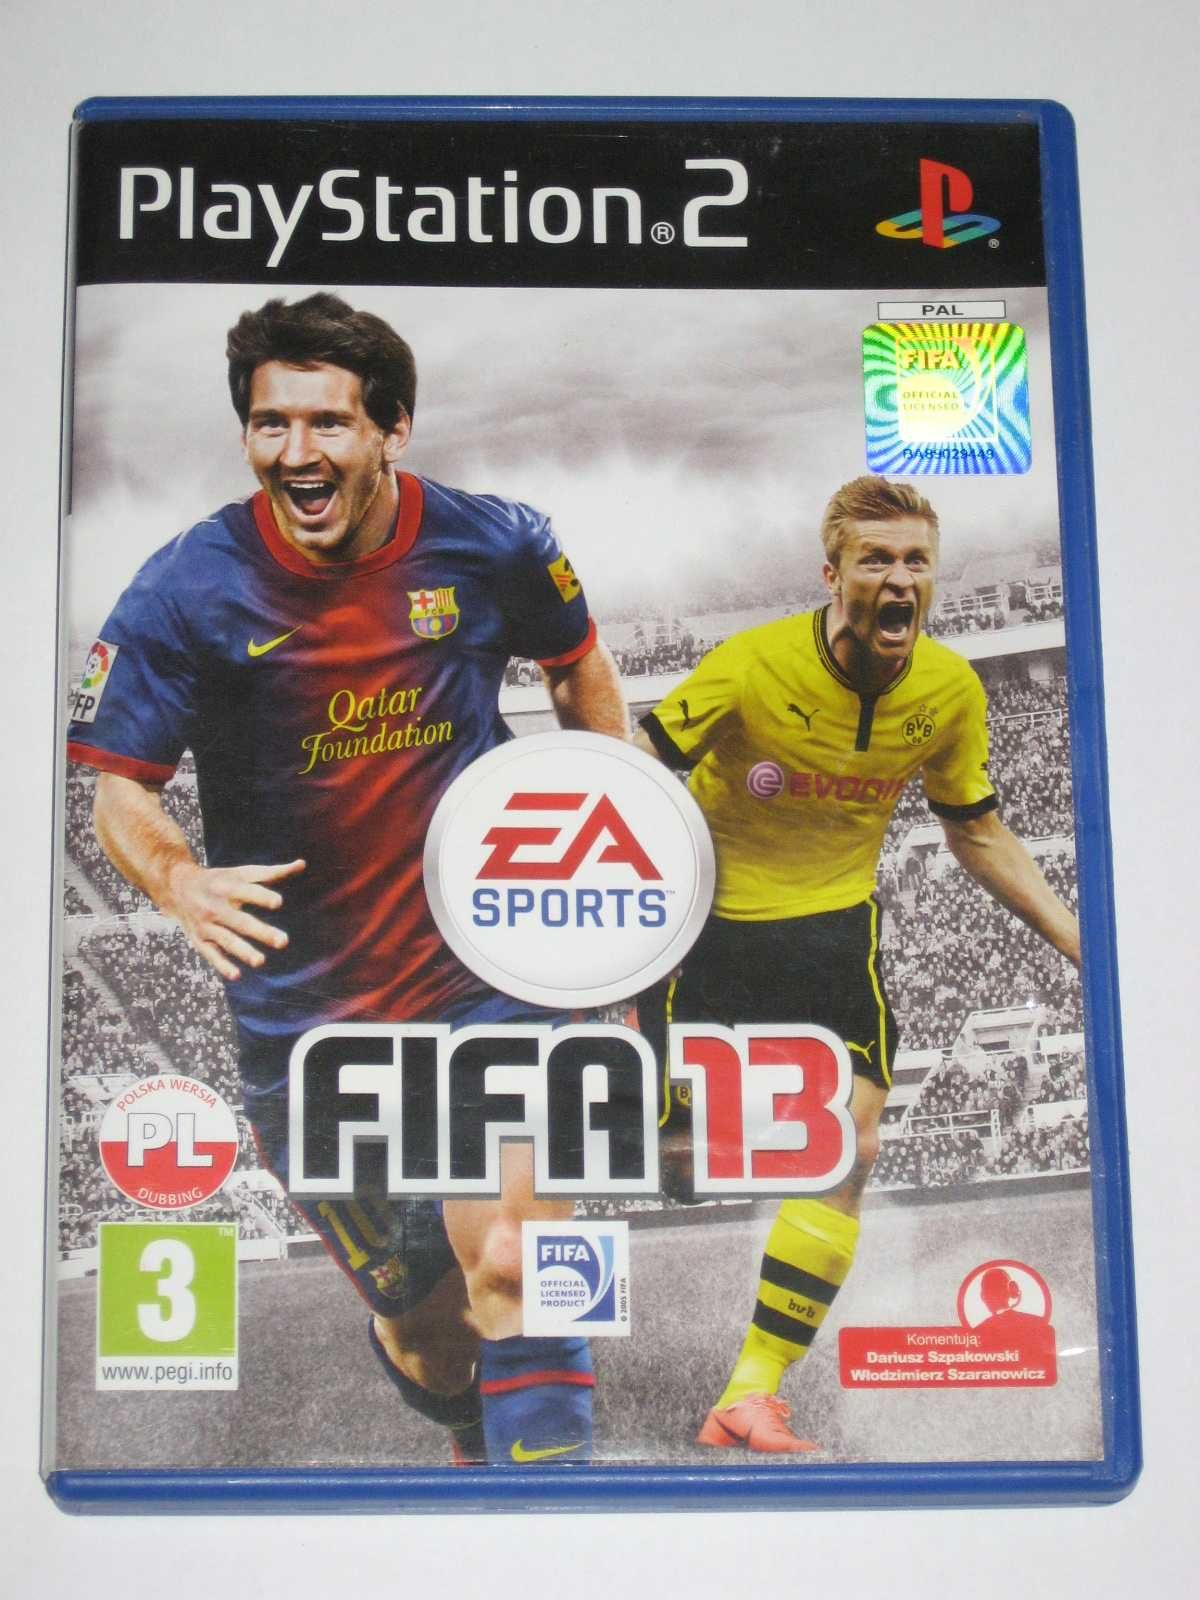 FIFA13 FIFA 13 PS2 BDB po polsku PL PS2 bdb!